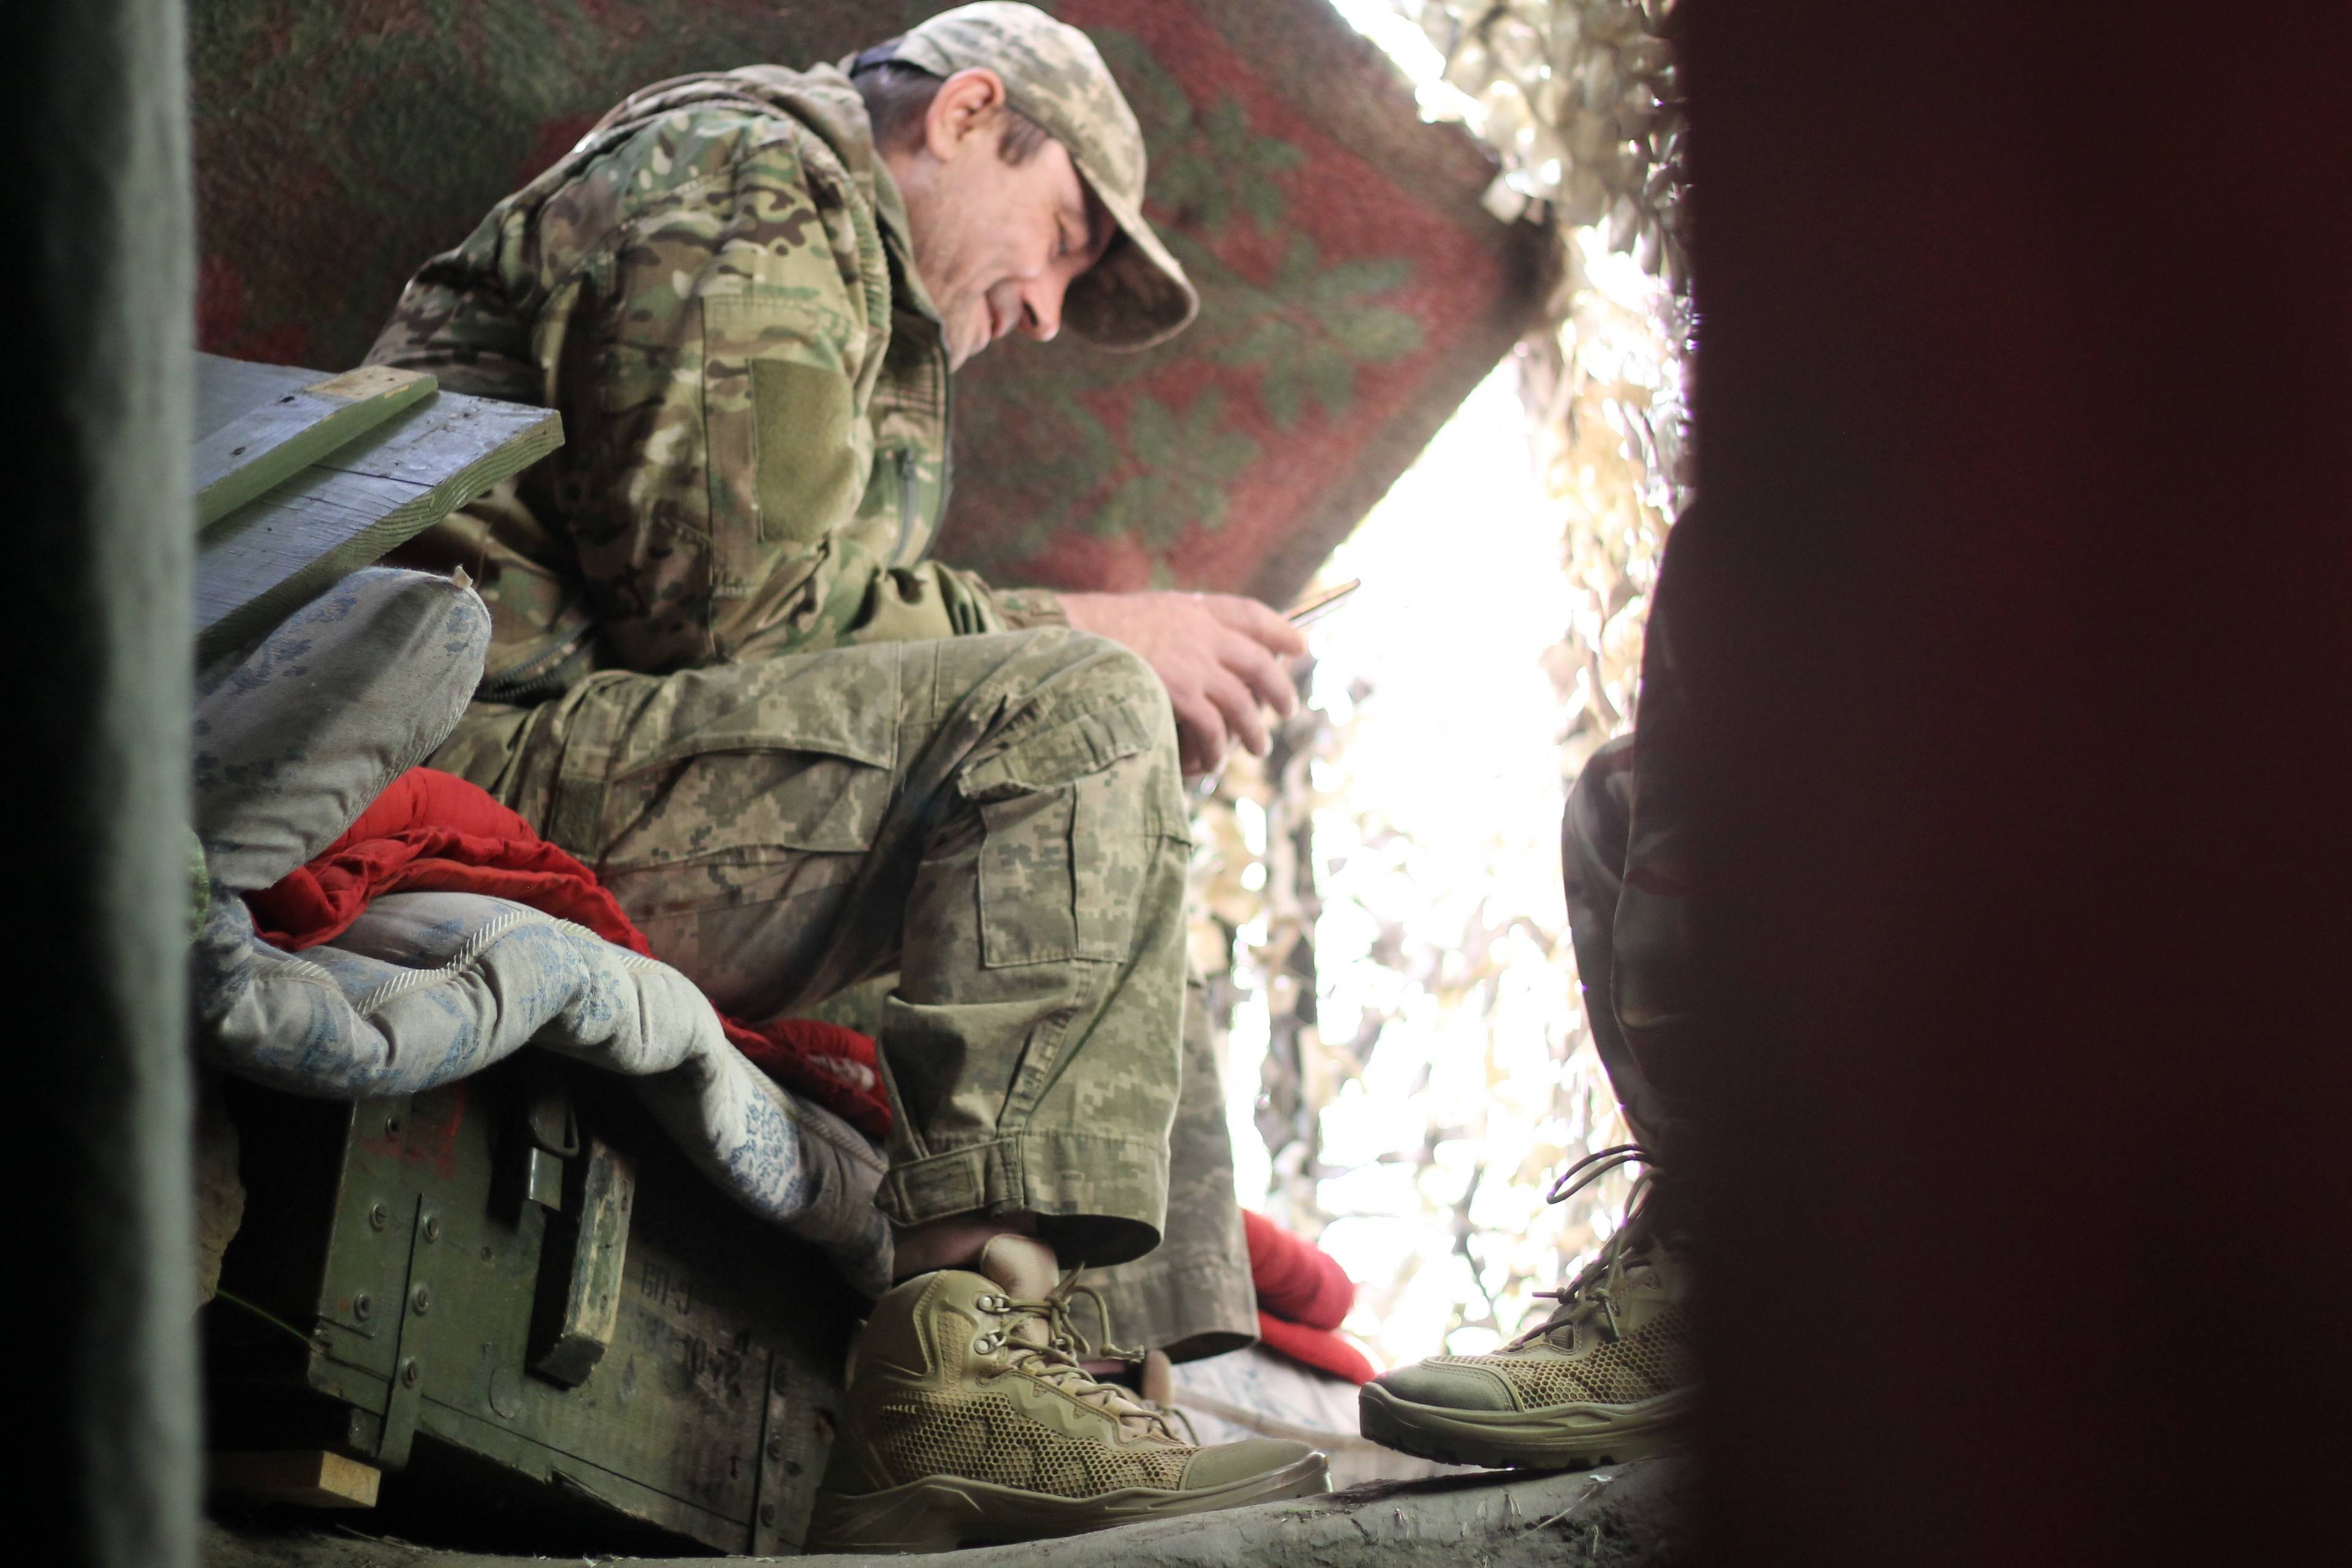 Żołnierz siedzi w ziemiance na drewnianej skrzyni po amunicji i przegląda telefon.